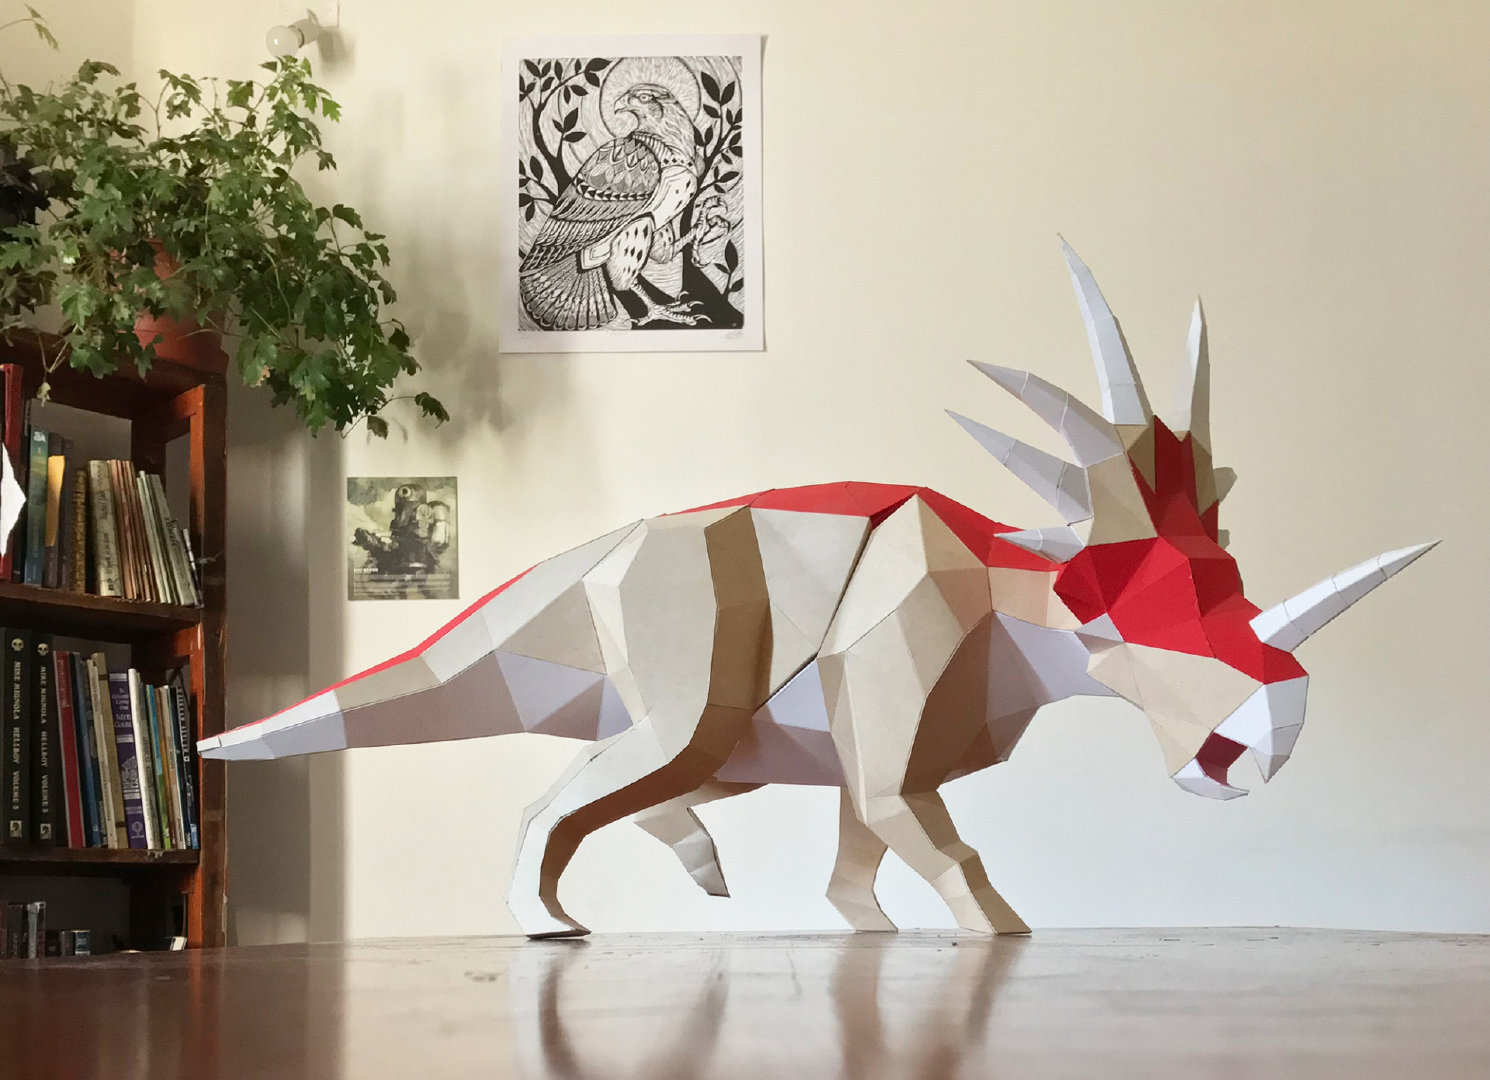 折纸手工教程，动物折纸暴龙第五版恐龙的折纸方法图解教程 - 有点网 - 好手艺